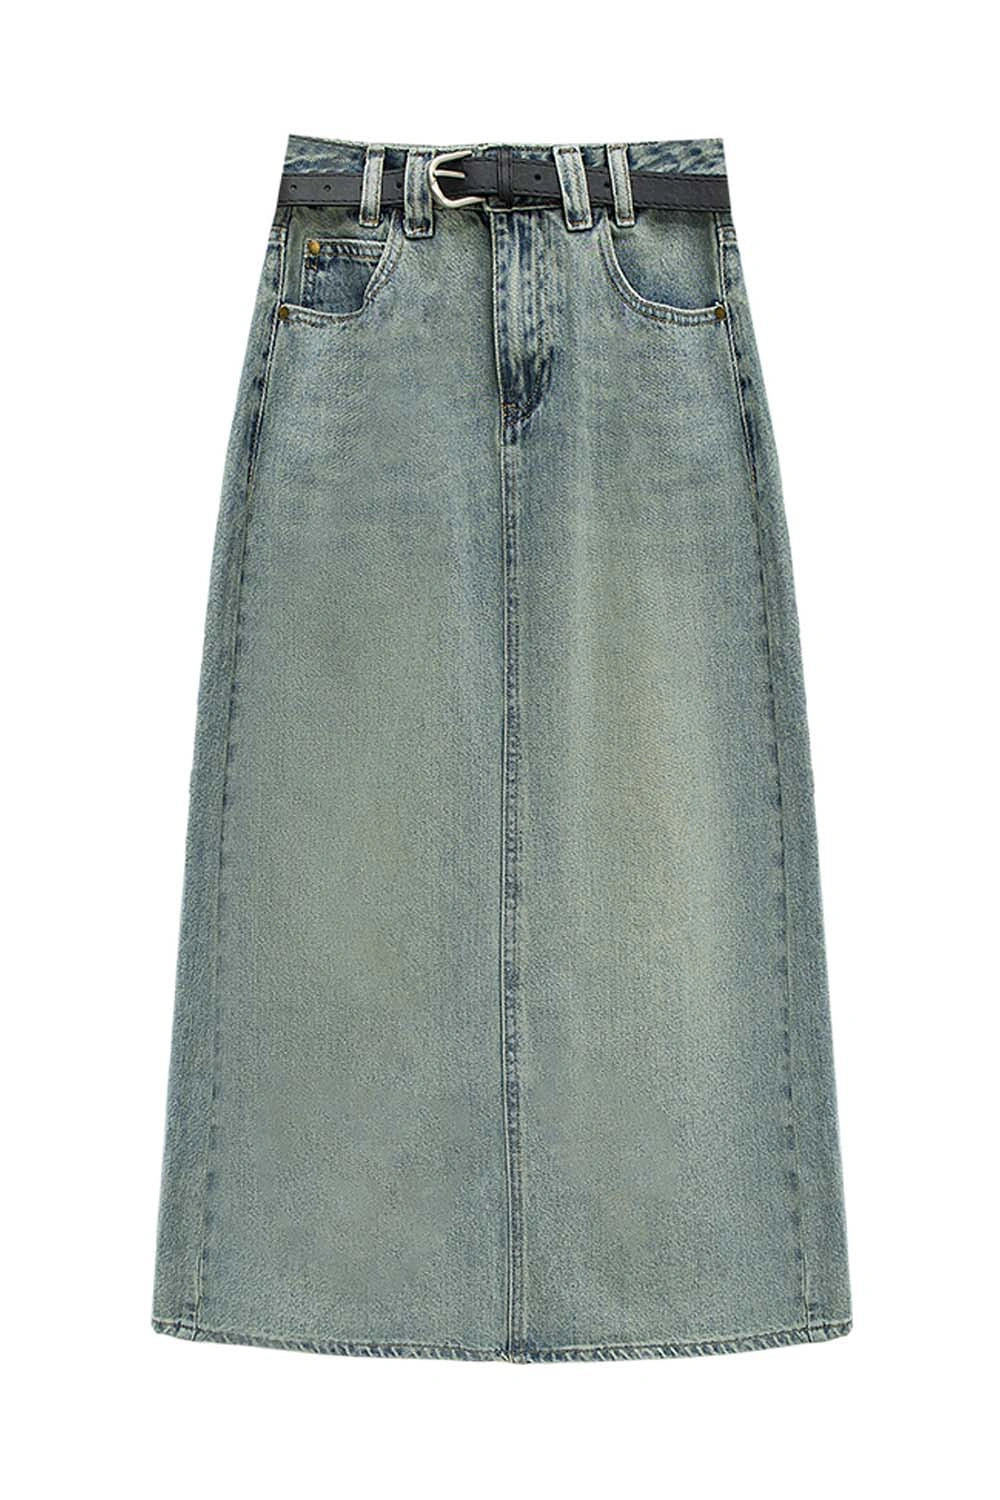 Skirt Denim A-Line Berpinggang Tinggi yang bergaya dengan Tali Pinggang